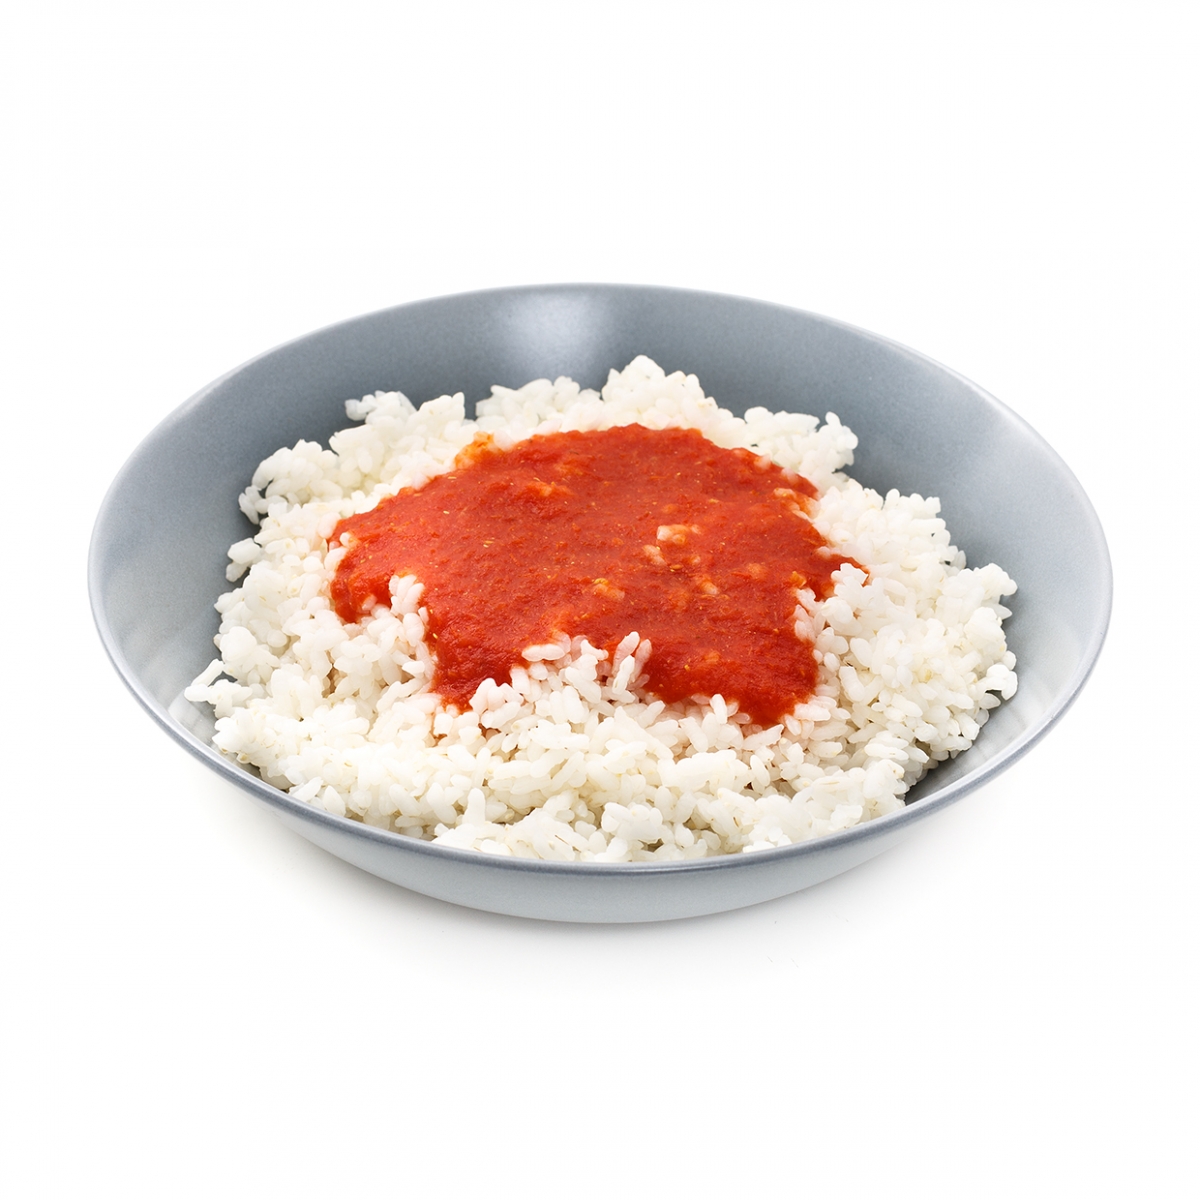 Imagen en la que se ve un plato de arroz con tomate